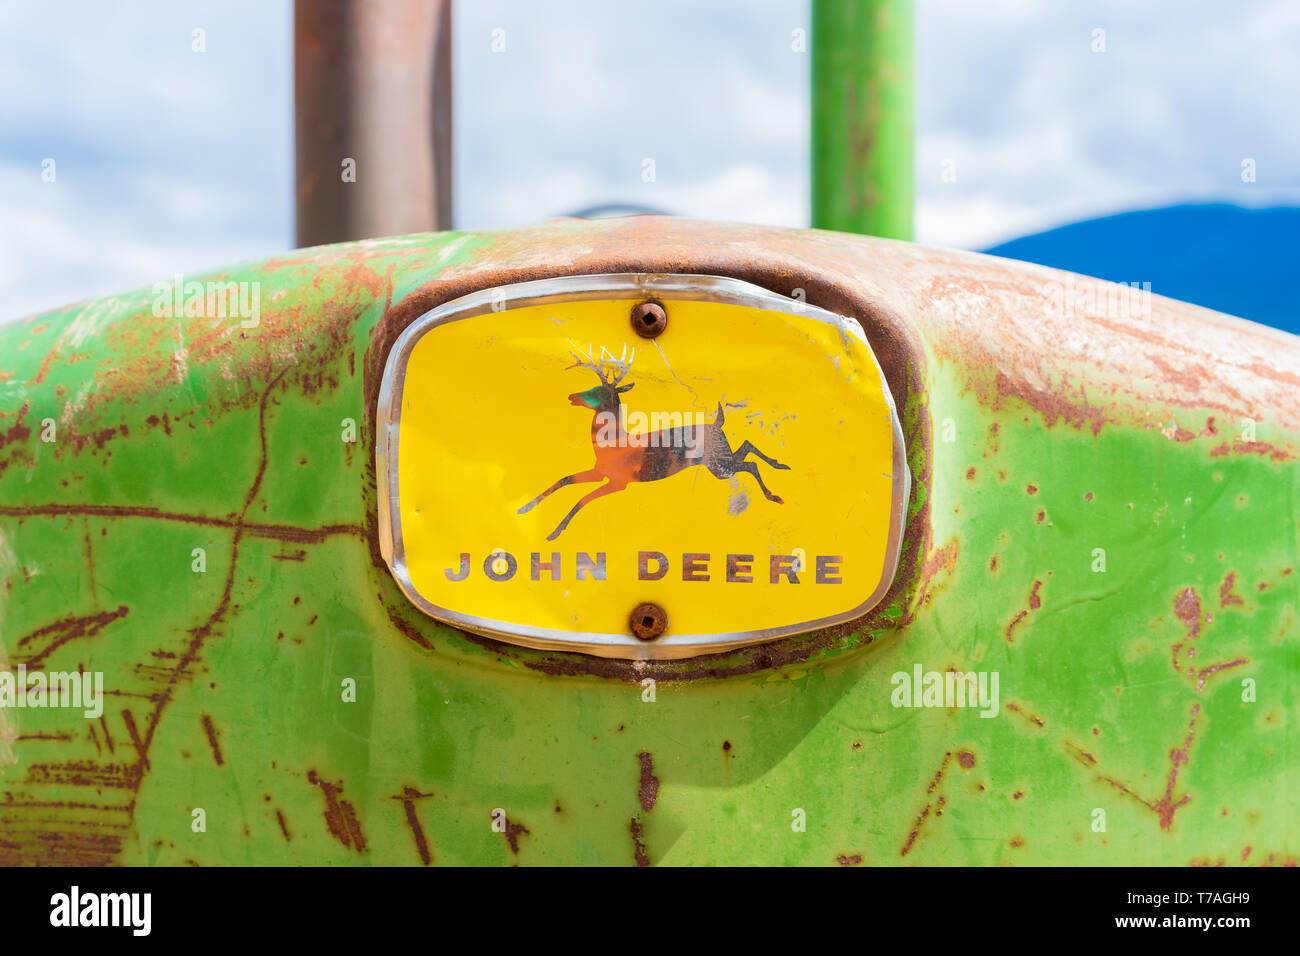 Rusy, antico trattore John Deere, naso anteriore con il logo full, mostrando il cervo e il marchio denominativo. Il verde e il giallo classico trattore attrezzature agricole c Foto Stock